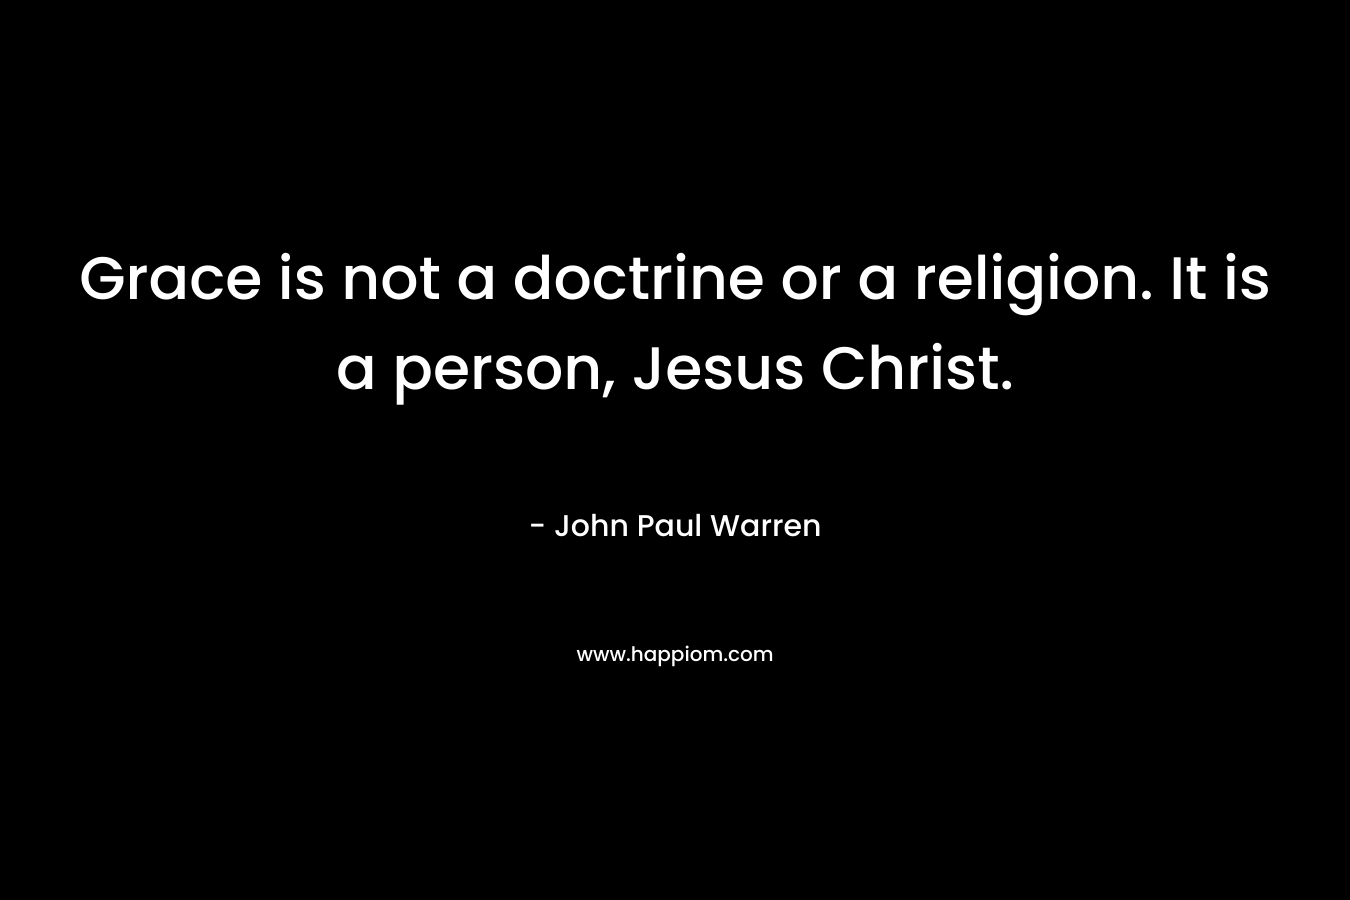 Grace is not a doctrine or a religion. It is a person, Jesus Christ. – John Paul Warren